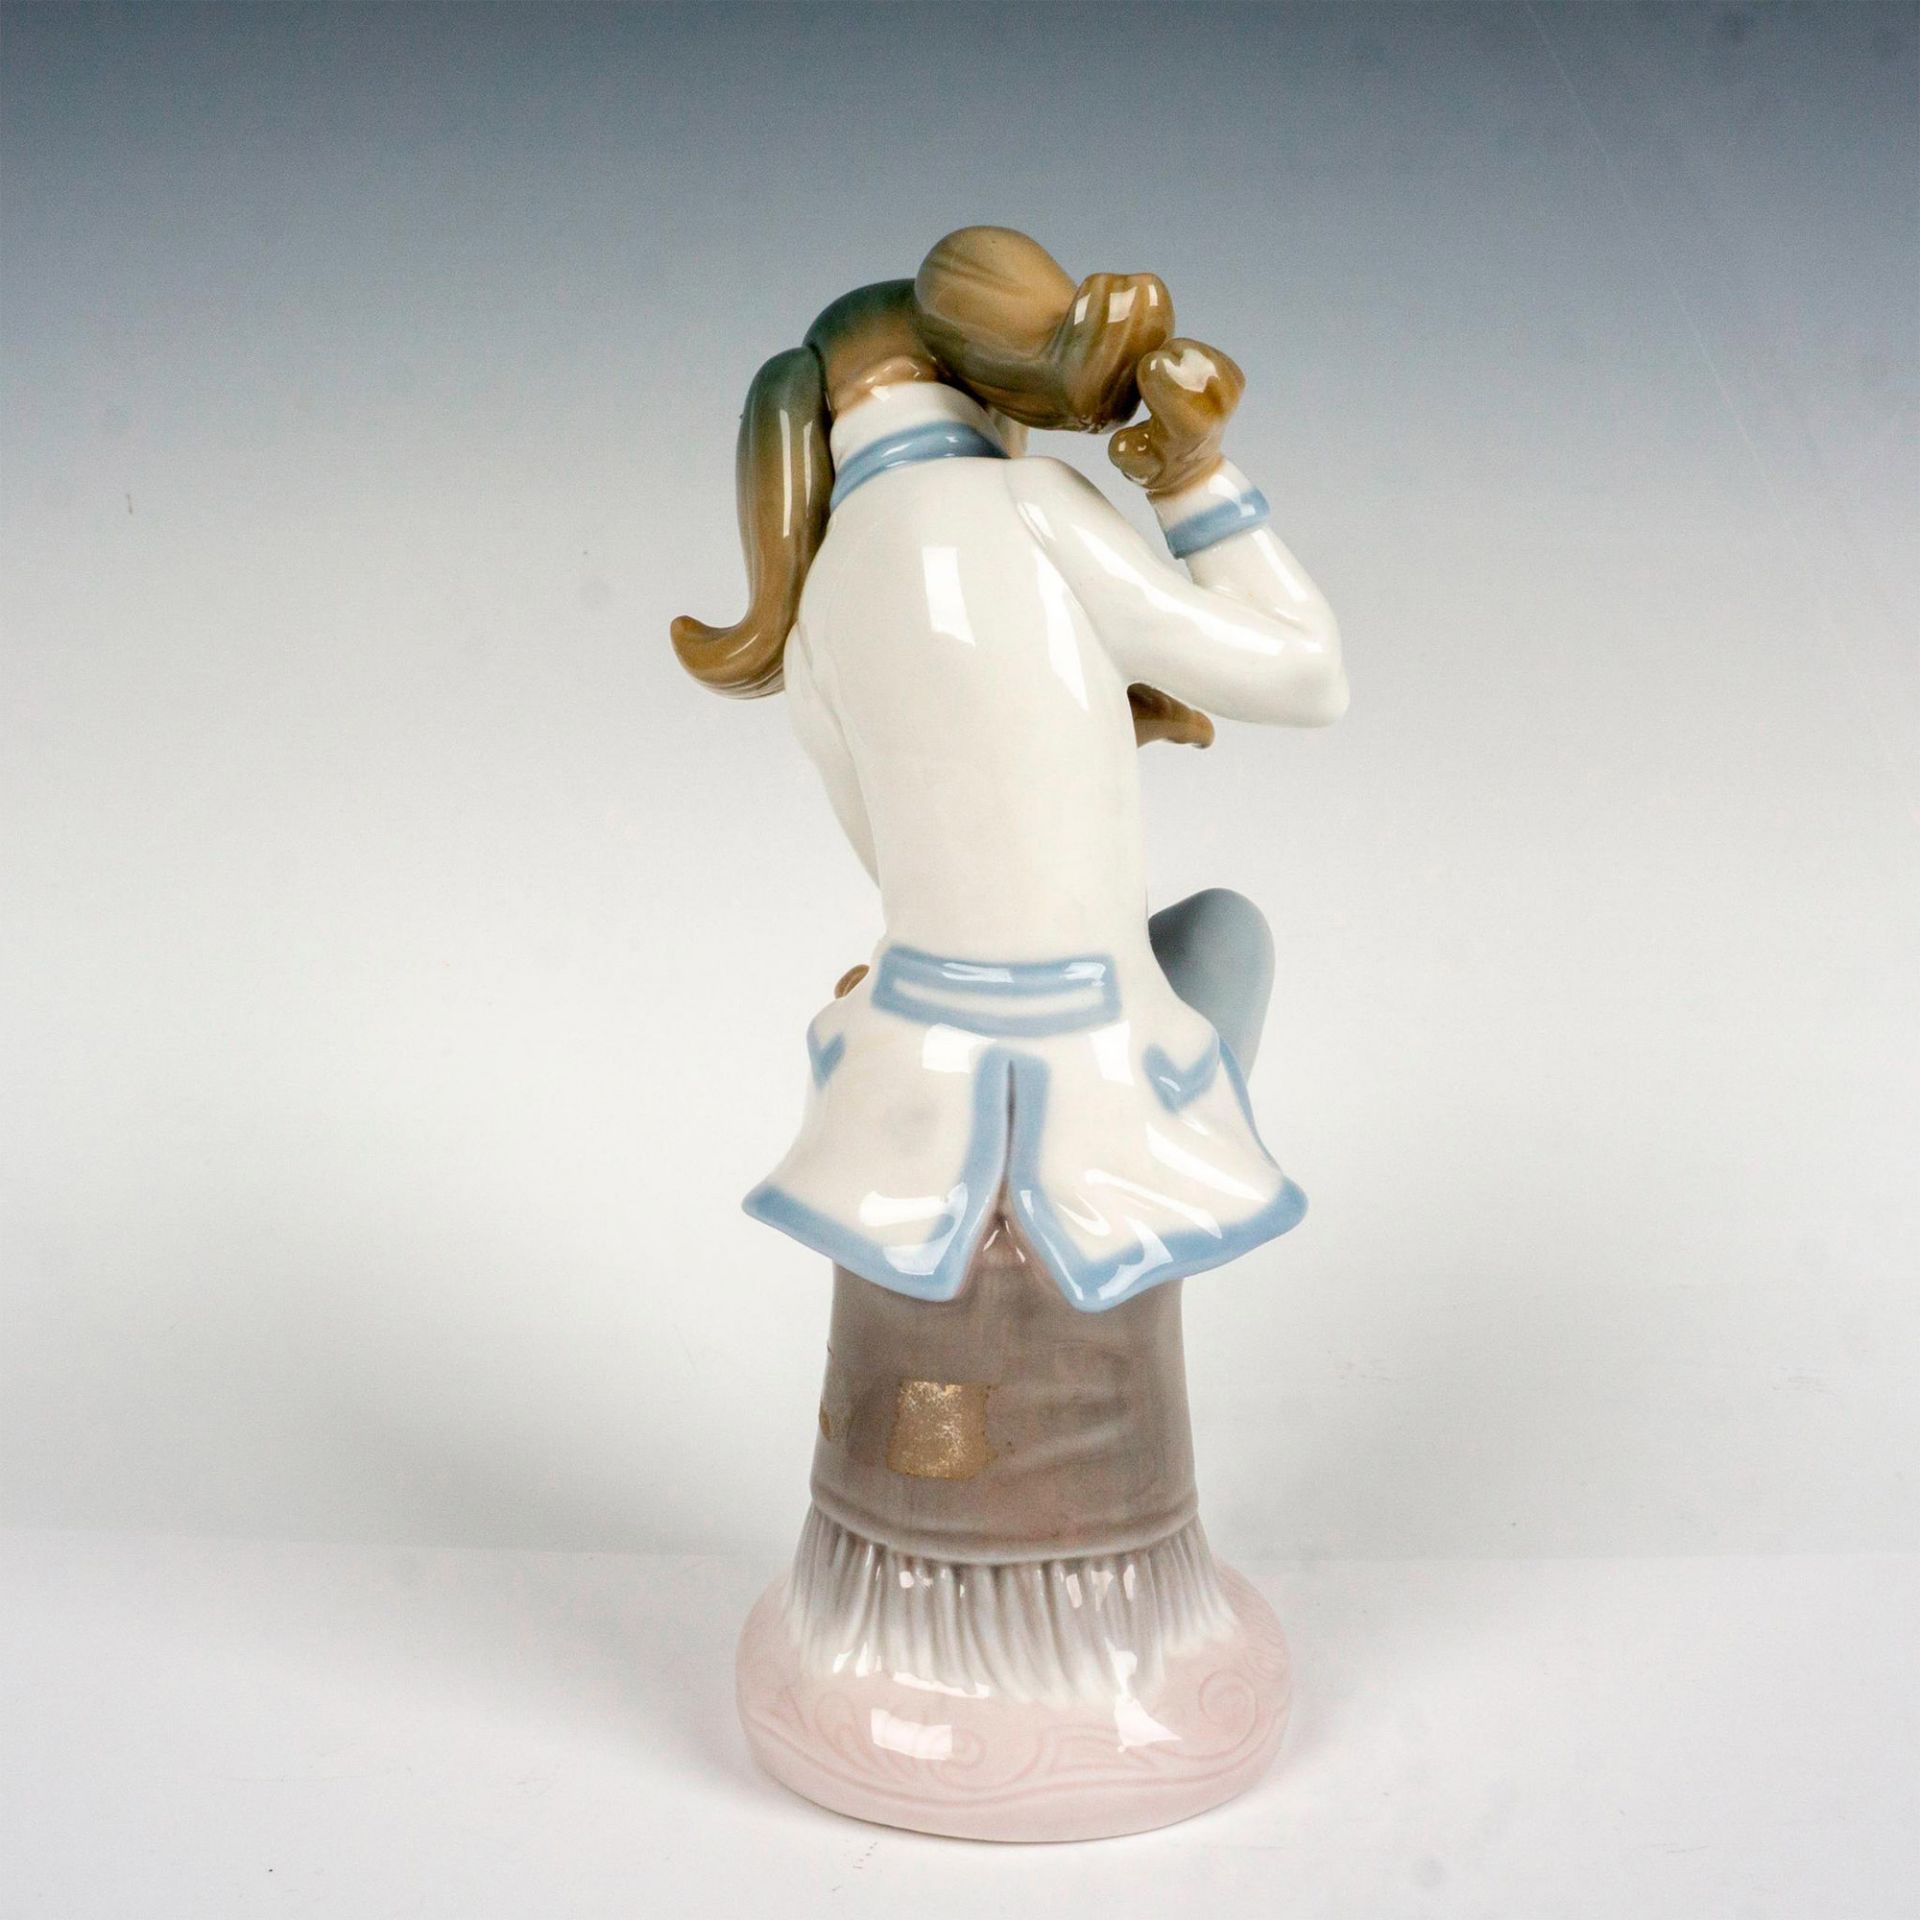 Lladro Porcelain Figurine, Dog Singer 1001155 - Image 2 of 3